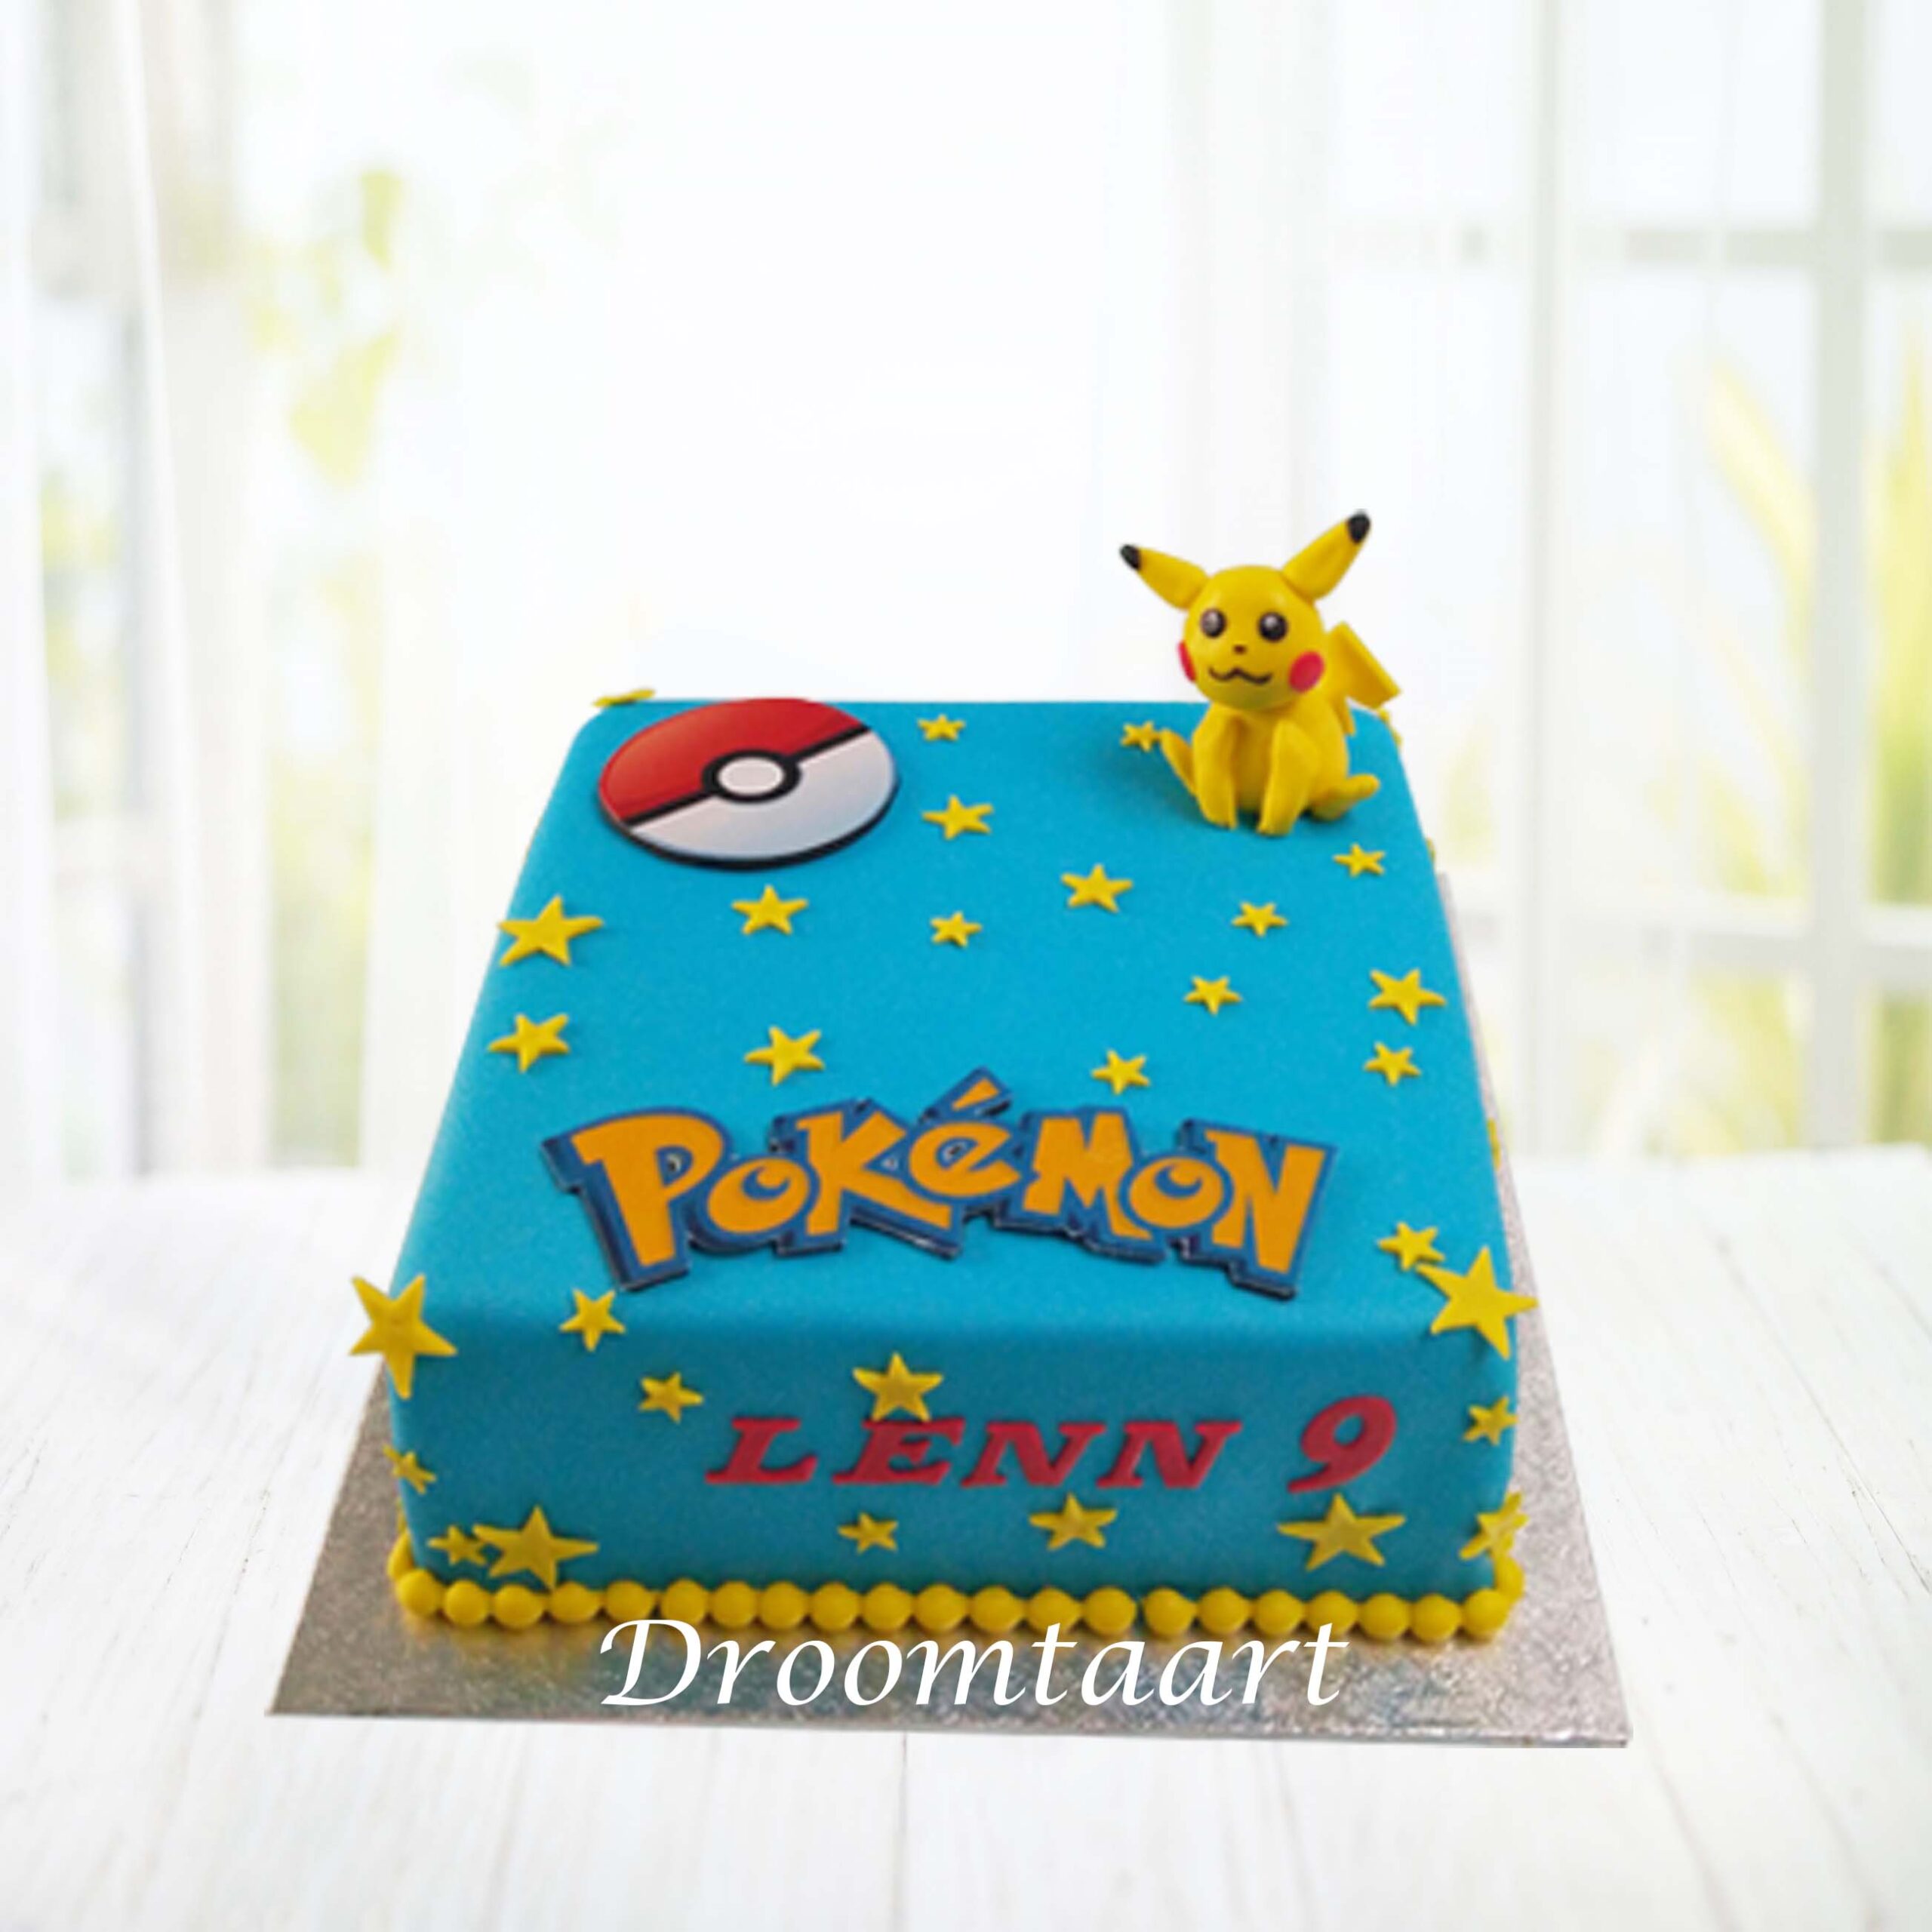 Fraude Interpersoonlijk Politiebureau Pokemon Pikachu taart 1 - Droomtaart